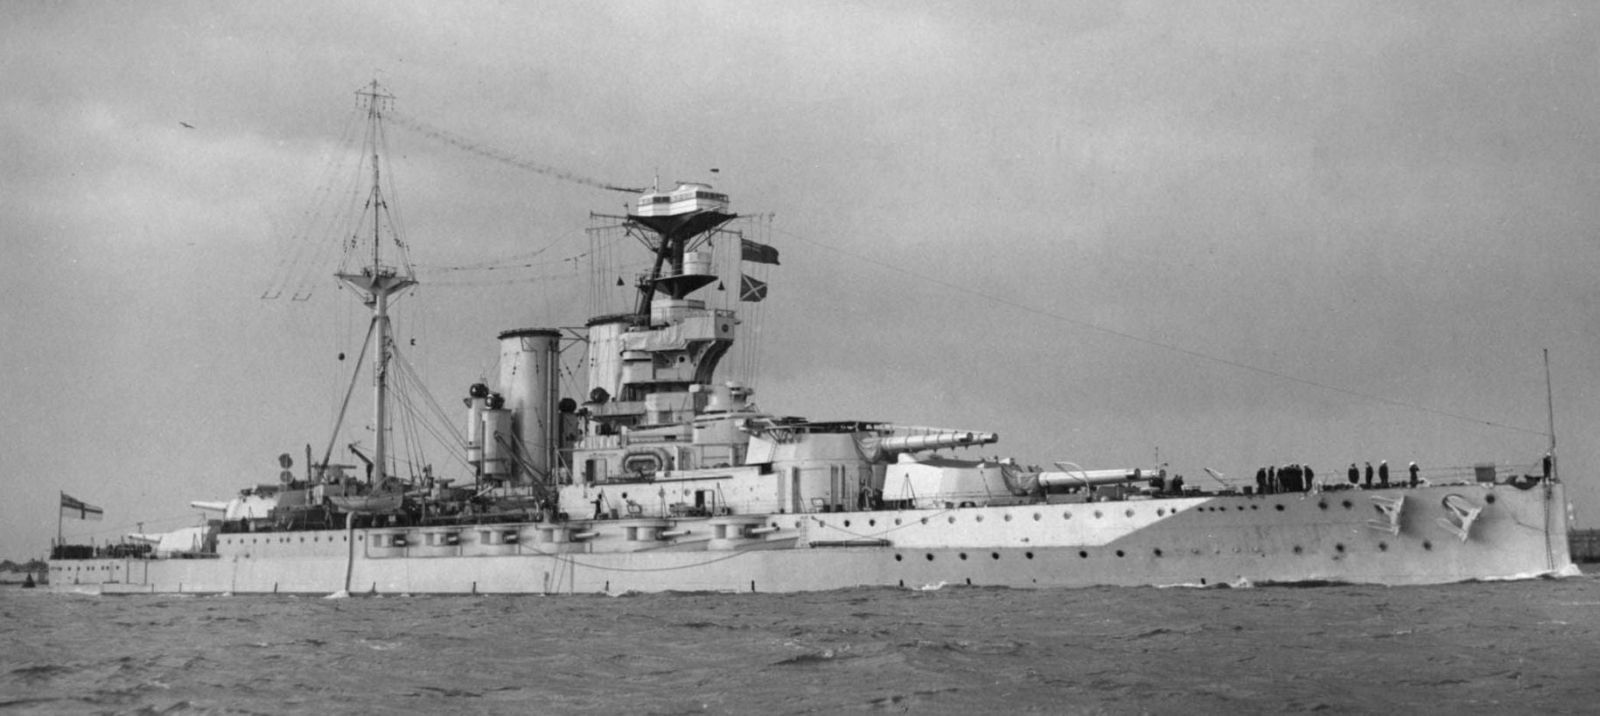 HMS Malaya, a Queen Elizabeth-class battleship, 1926